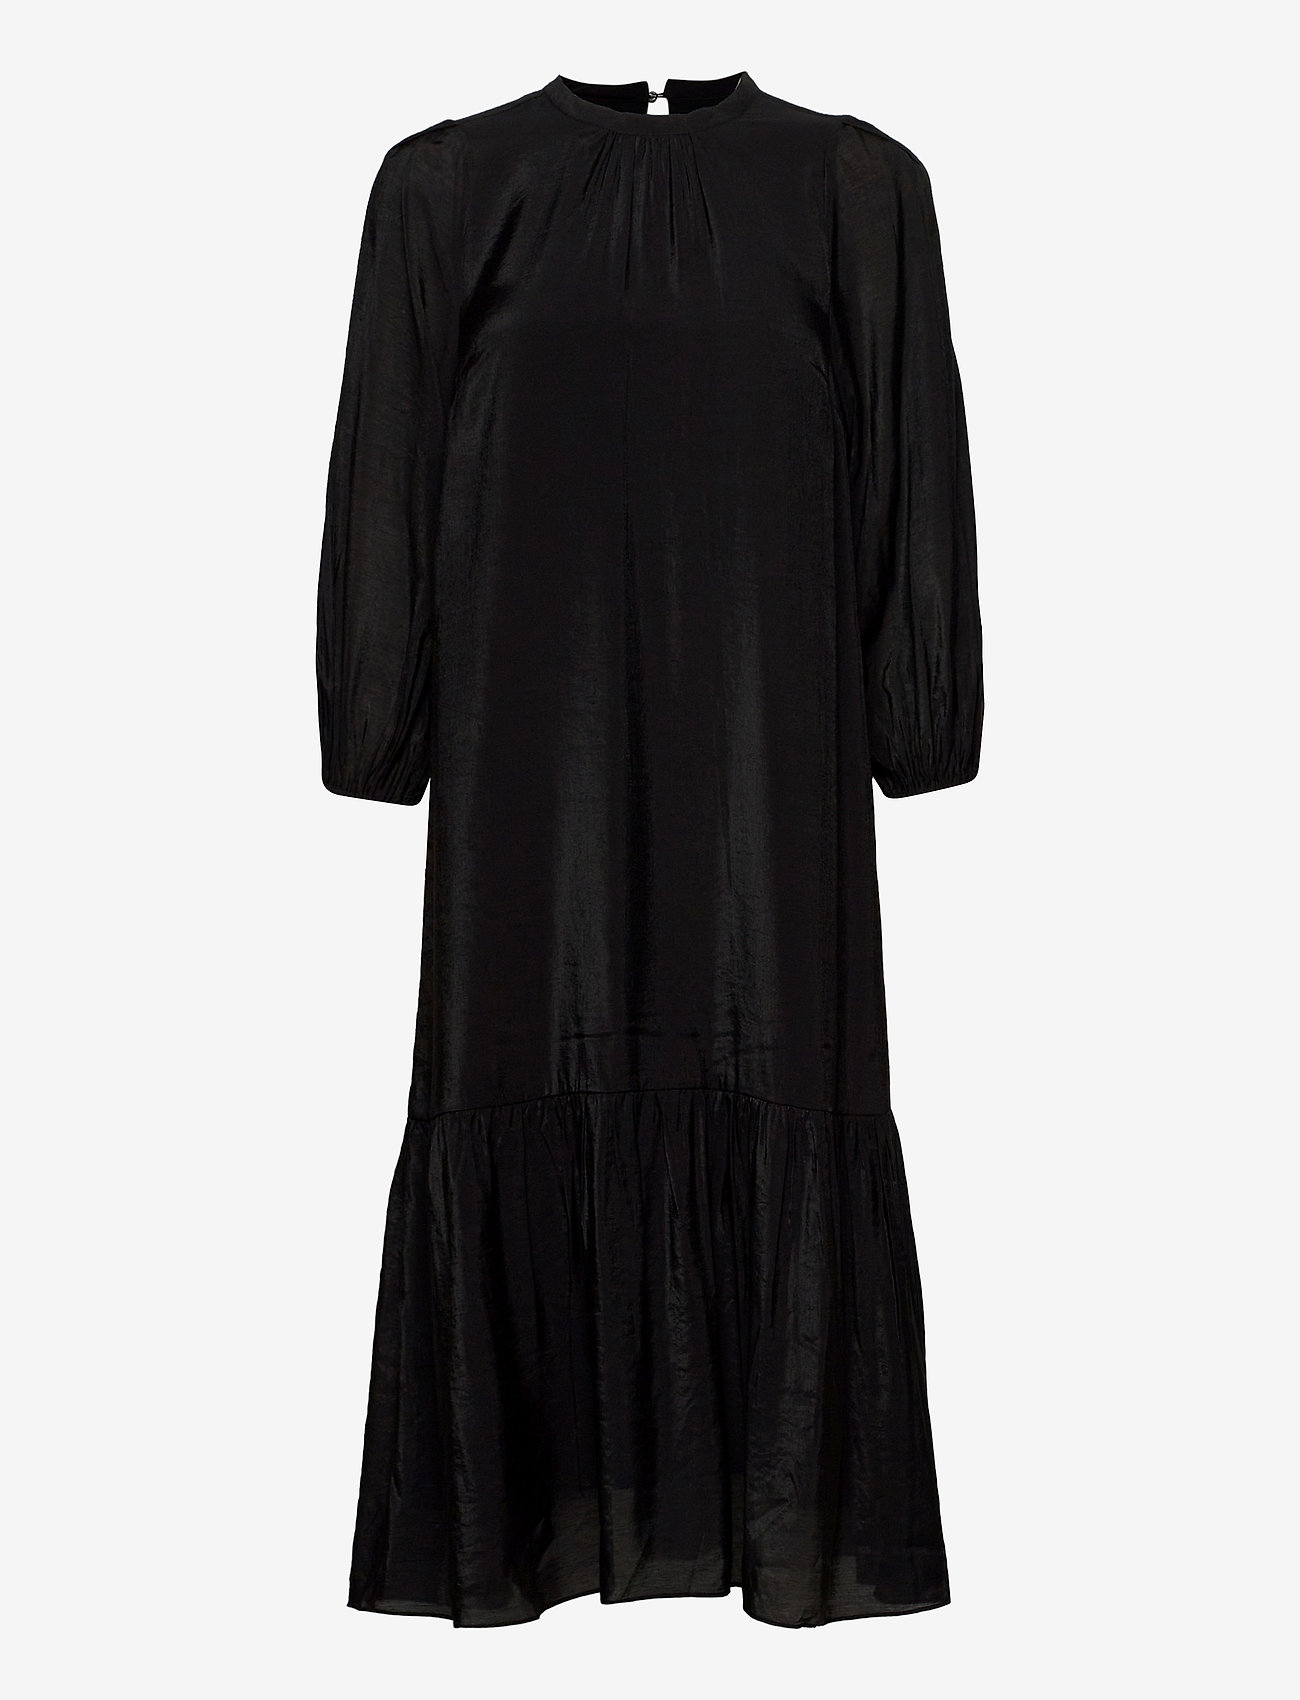 InWear - PoppyIW Dress - midi dresses - black - 0